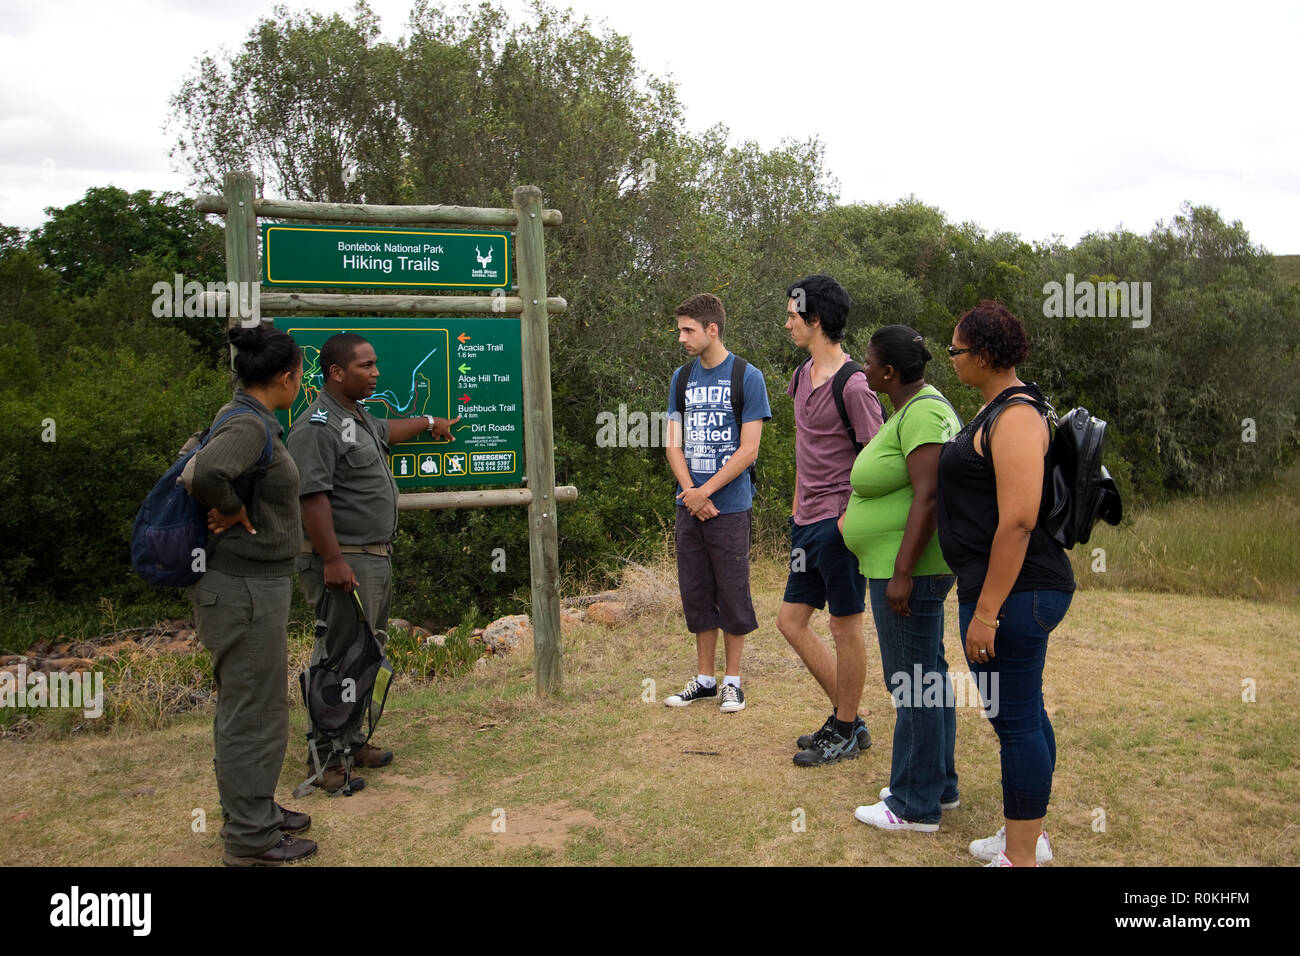 Wanderer und Förster am Schild für Bontebok National Park suchen Stockfoto